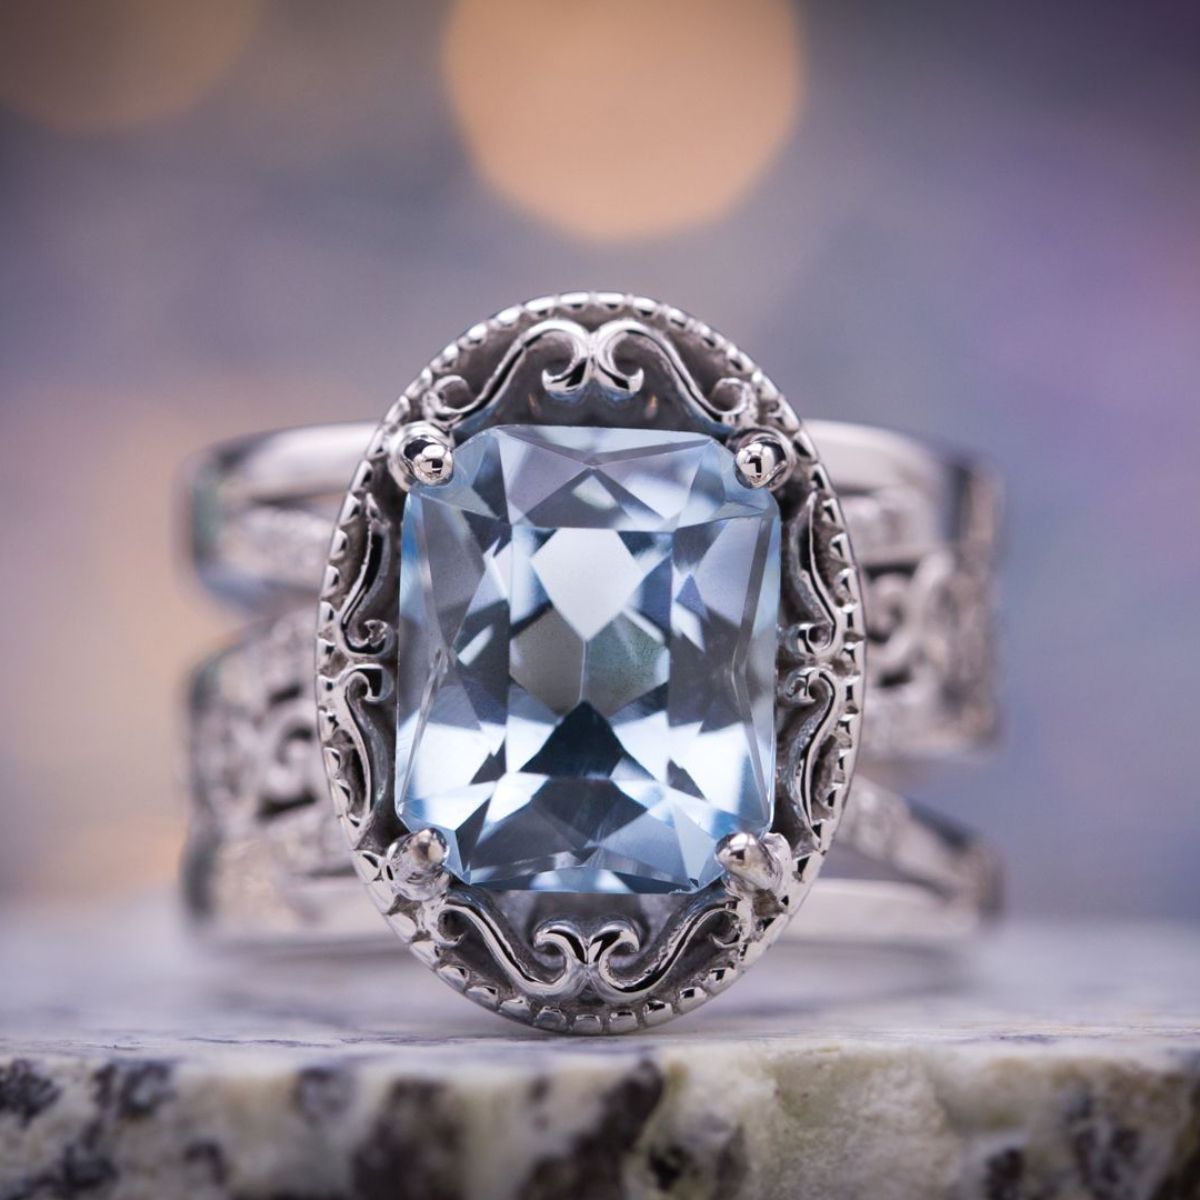 Zhiwen Vintage Fashion Women 925 Silver Aquamarine Gemstone Ring Engagement Wedding Jewelry Size 5-11 11# 